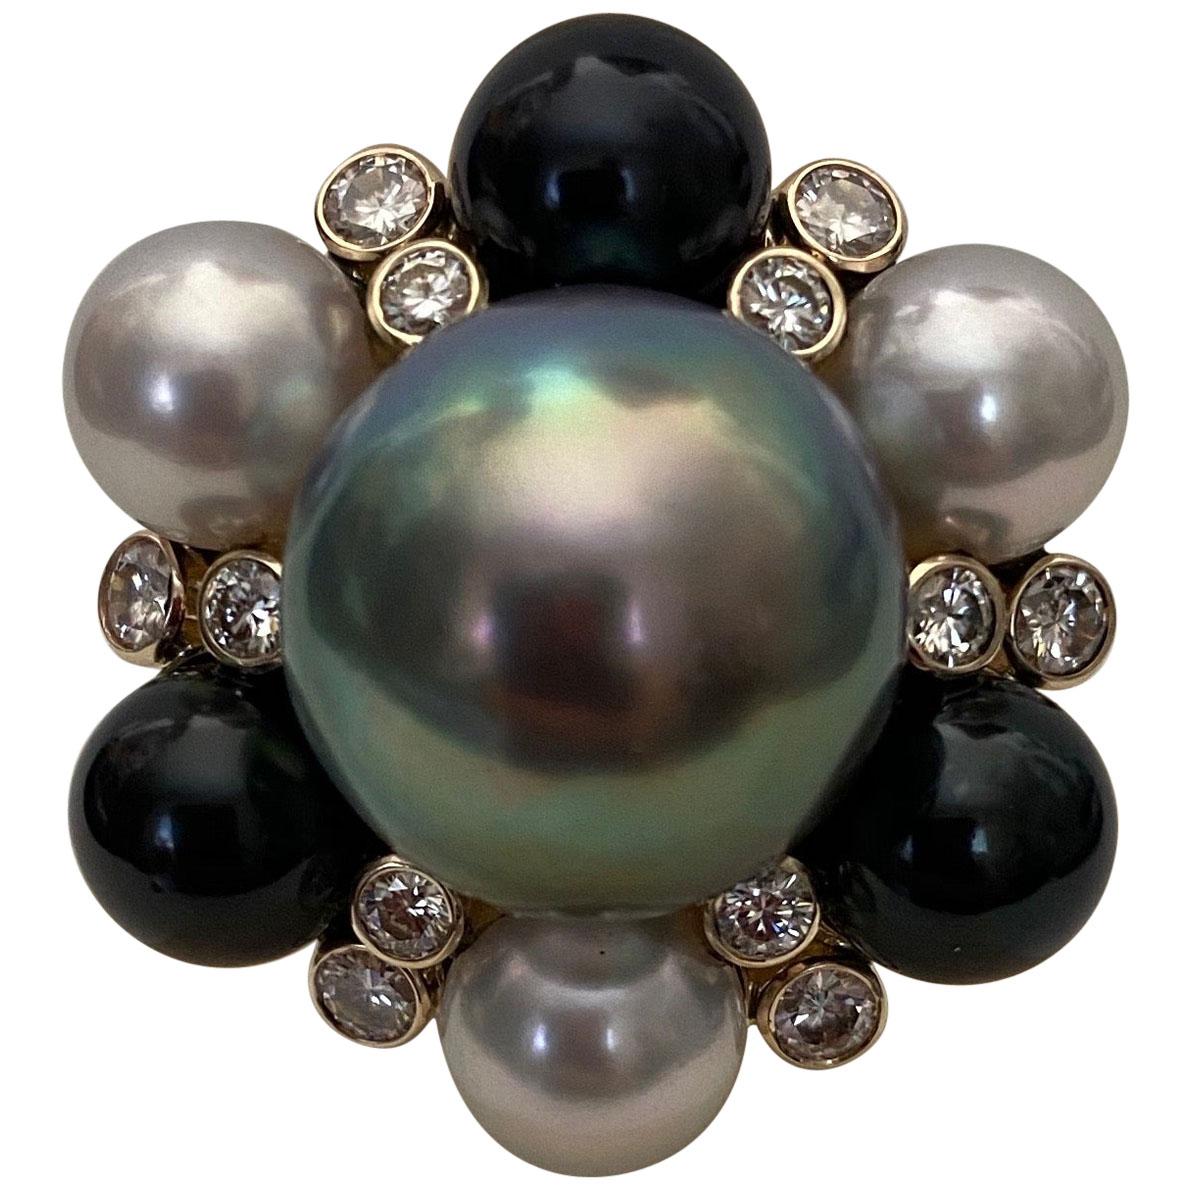 Cette impressionnante bague de cocktail est ornée d'une perle de Tahiti gris colombe de 15 mm.  La perle de qualité gemme a une  Nacre arc-en-ciel lustrée reflétant les bleus, les roses et les verts.  La perle est entourée de 3 perles Akoya noires